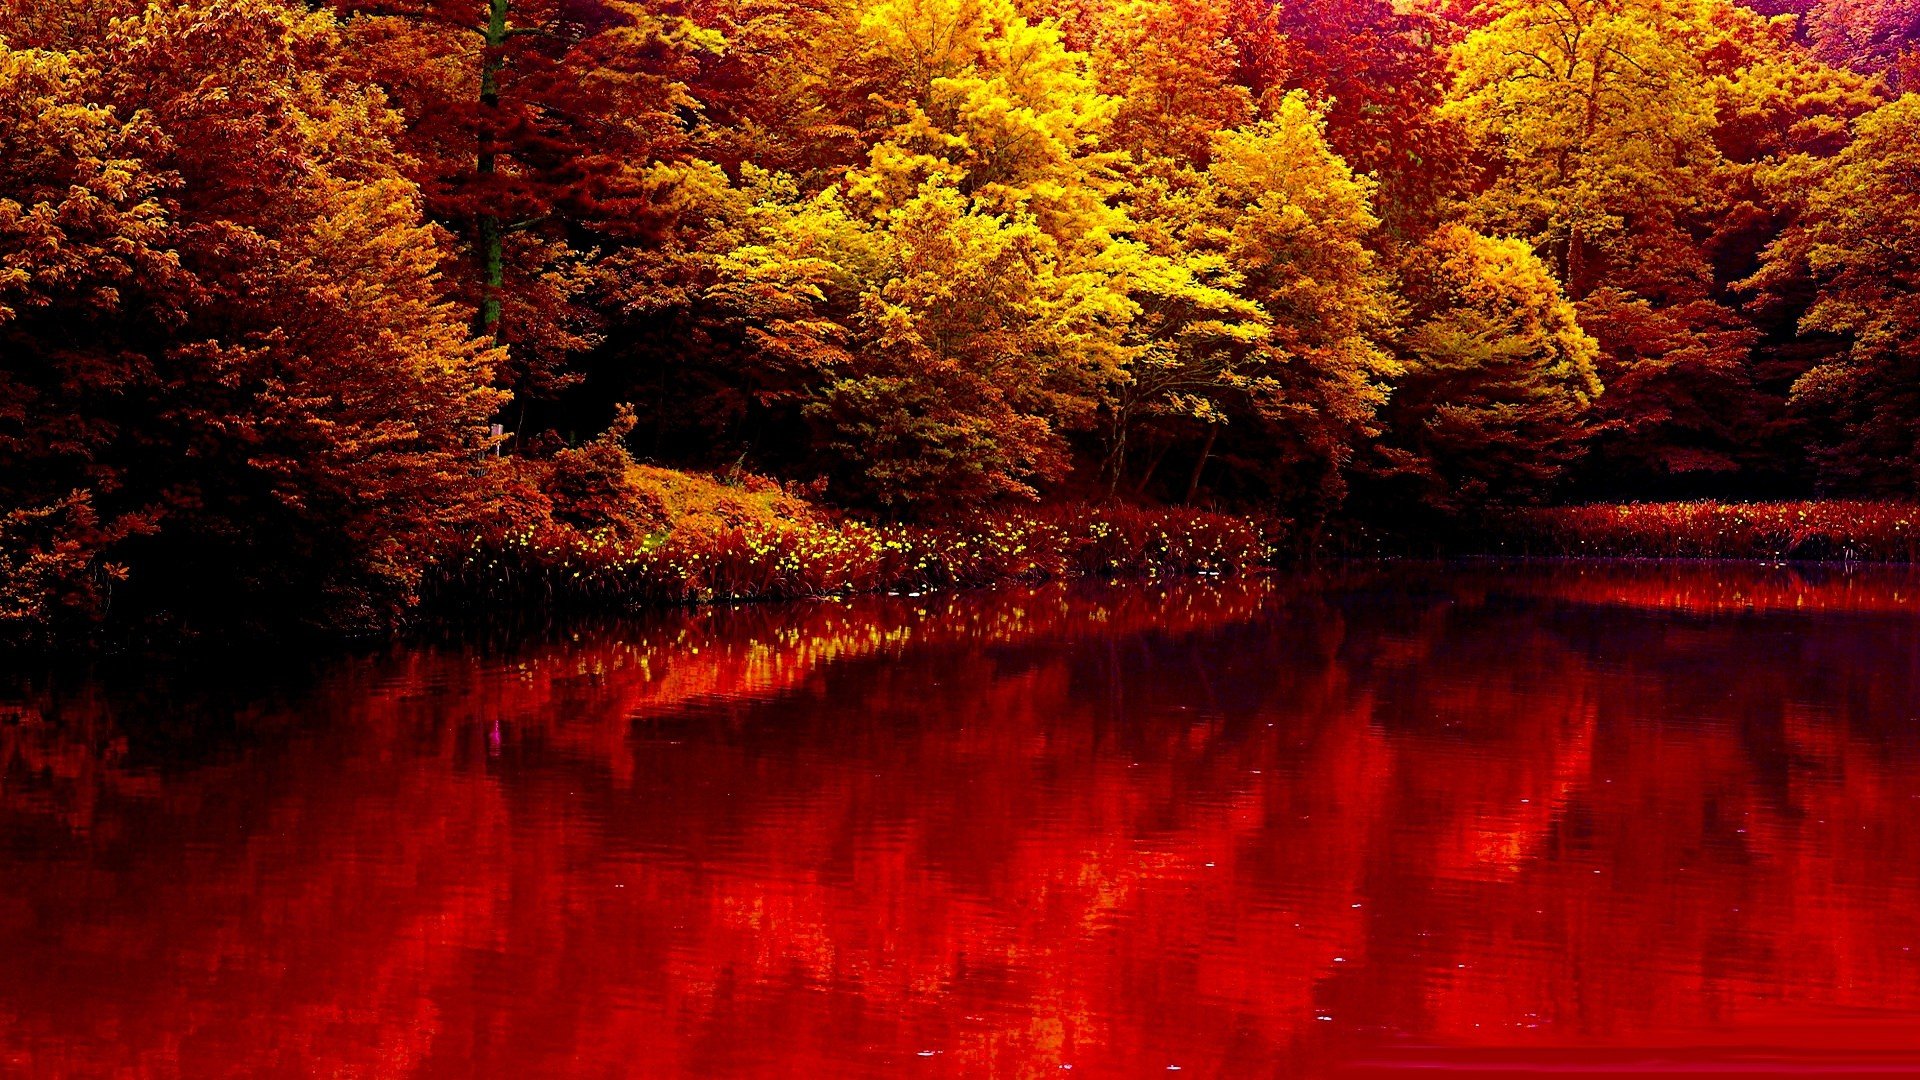 red nature wallpaper,nature,red,reflection,natural landscape,leaf